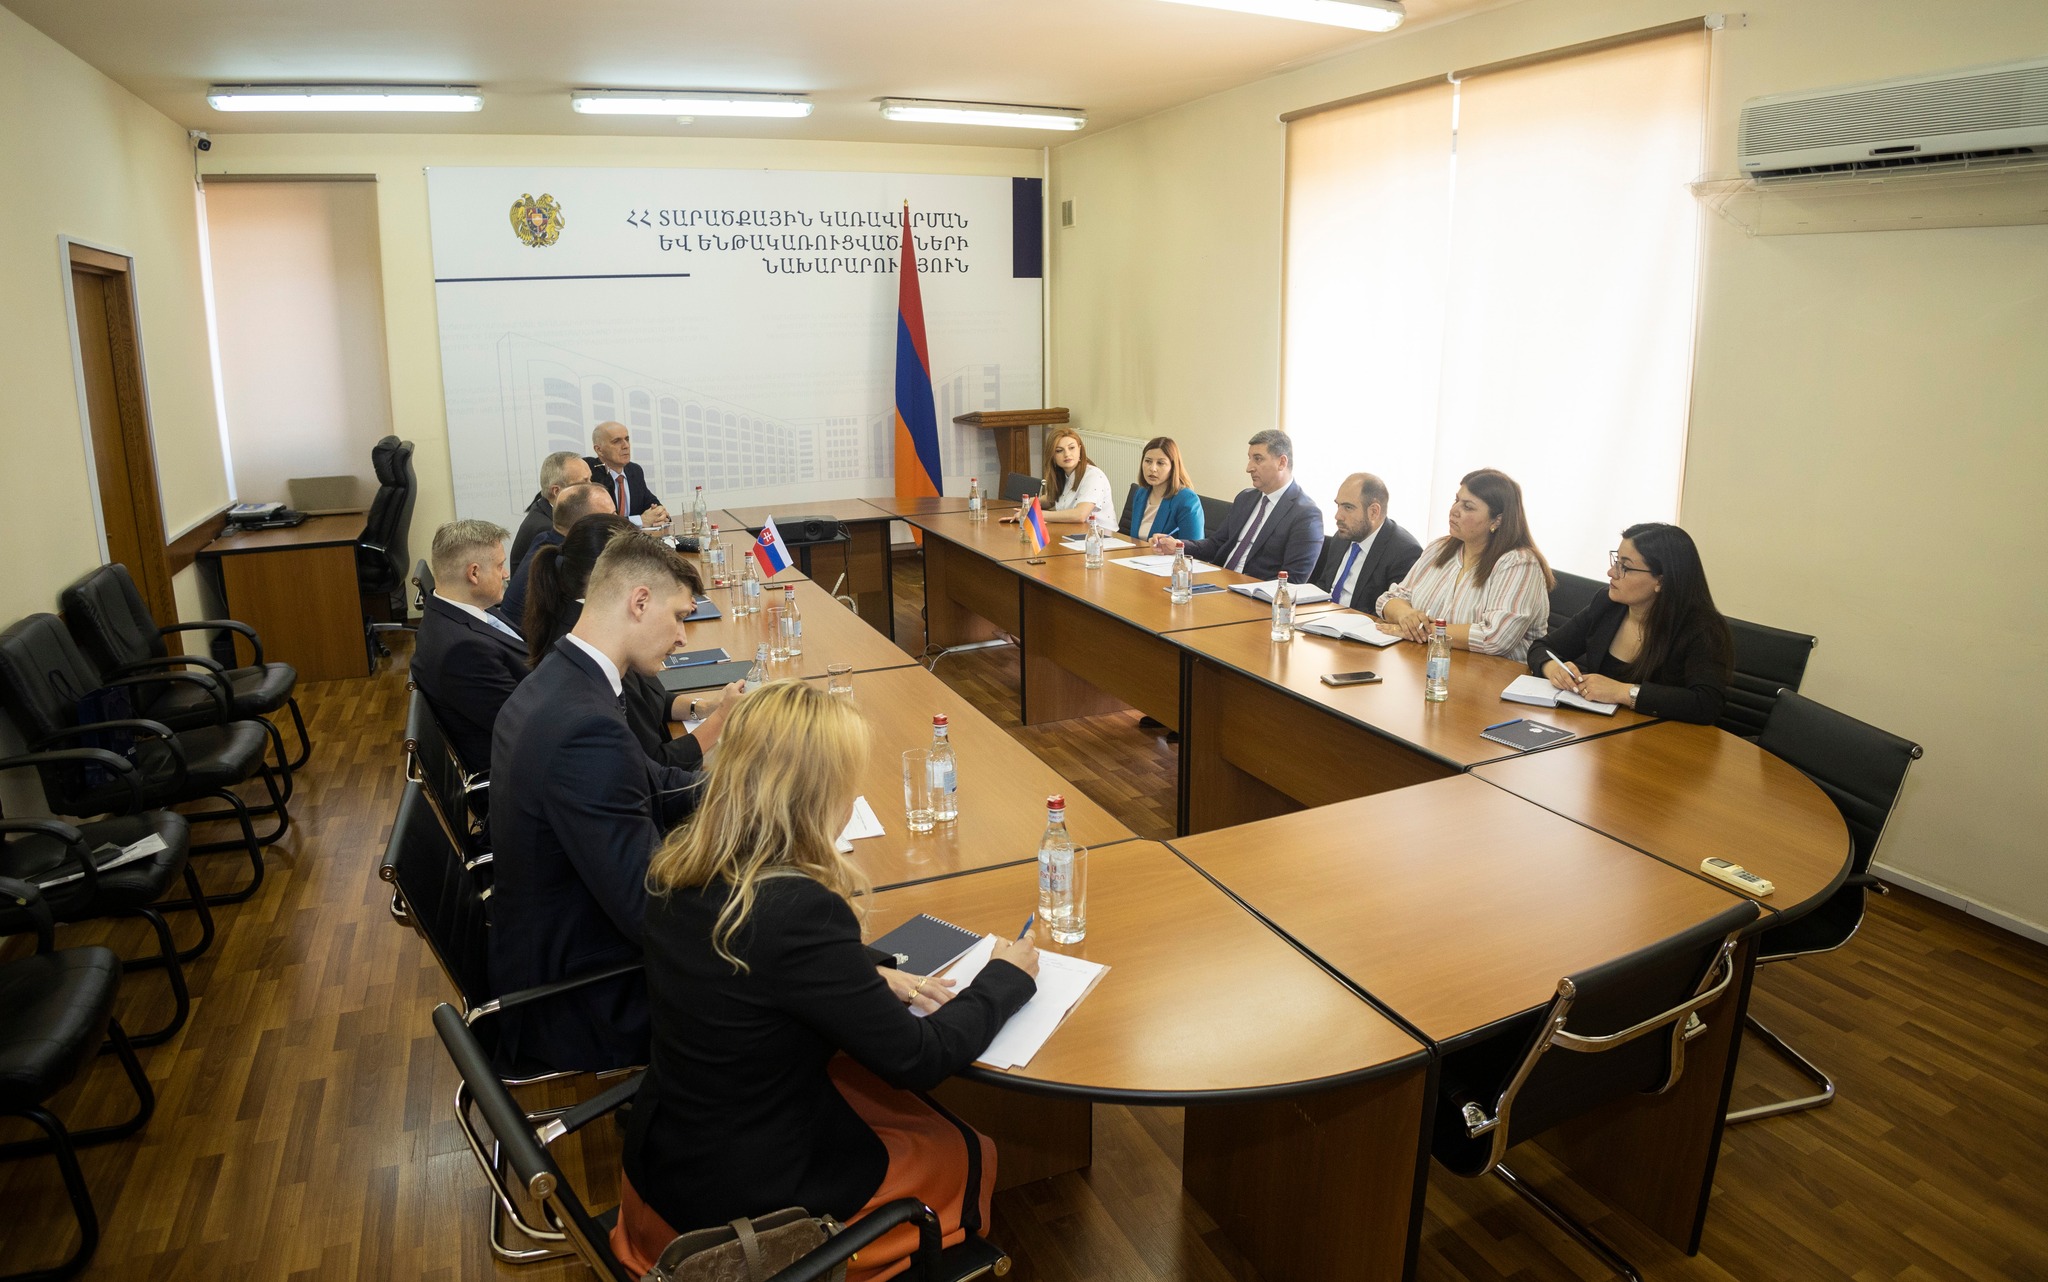 Սլովակյան ընկերությունները հրավիրվել են մասնակցելու Հայկական ԱԷԿ-ում իրականացվող աշխատանքների մրցույթներին